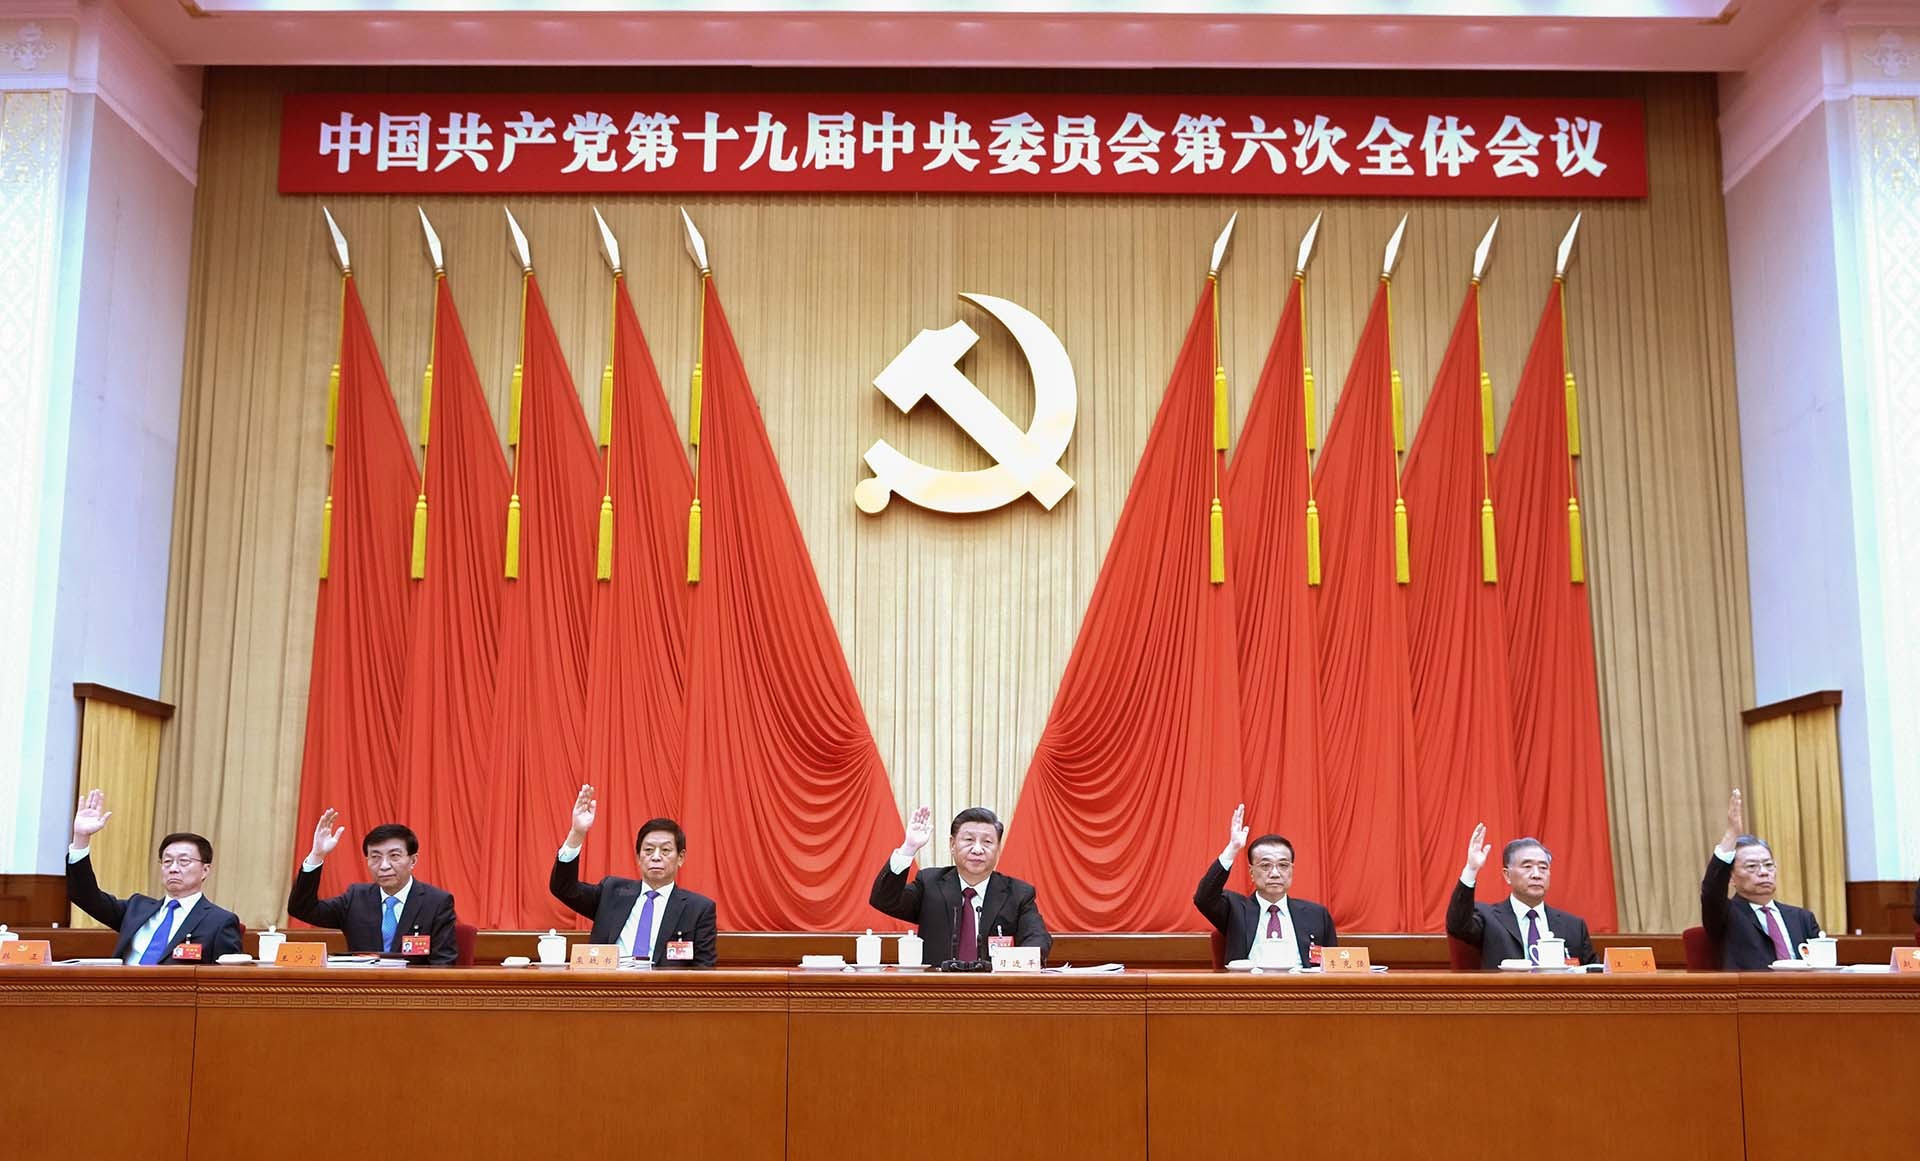 Chủ tịch Trung Quốc Tập Cận Bình cùng Ban Thường vụ Bộ Chính trị Đảng Cộng sản Trung Quốc tại Hội nghị Trung ương 6 khóa XIX Đảng Cộng sản Trung Quốc. (Nguồn: Tân hoa xã/Getty Images)